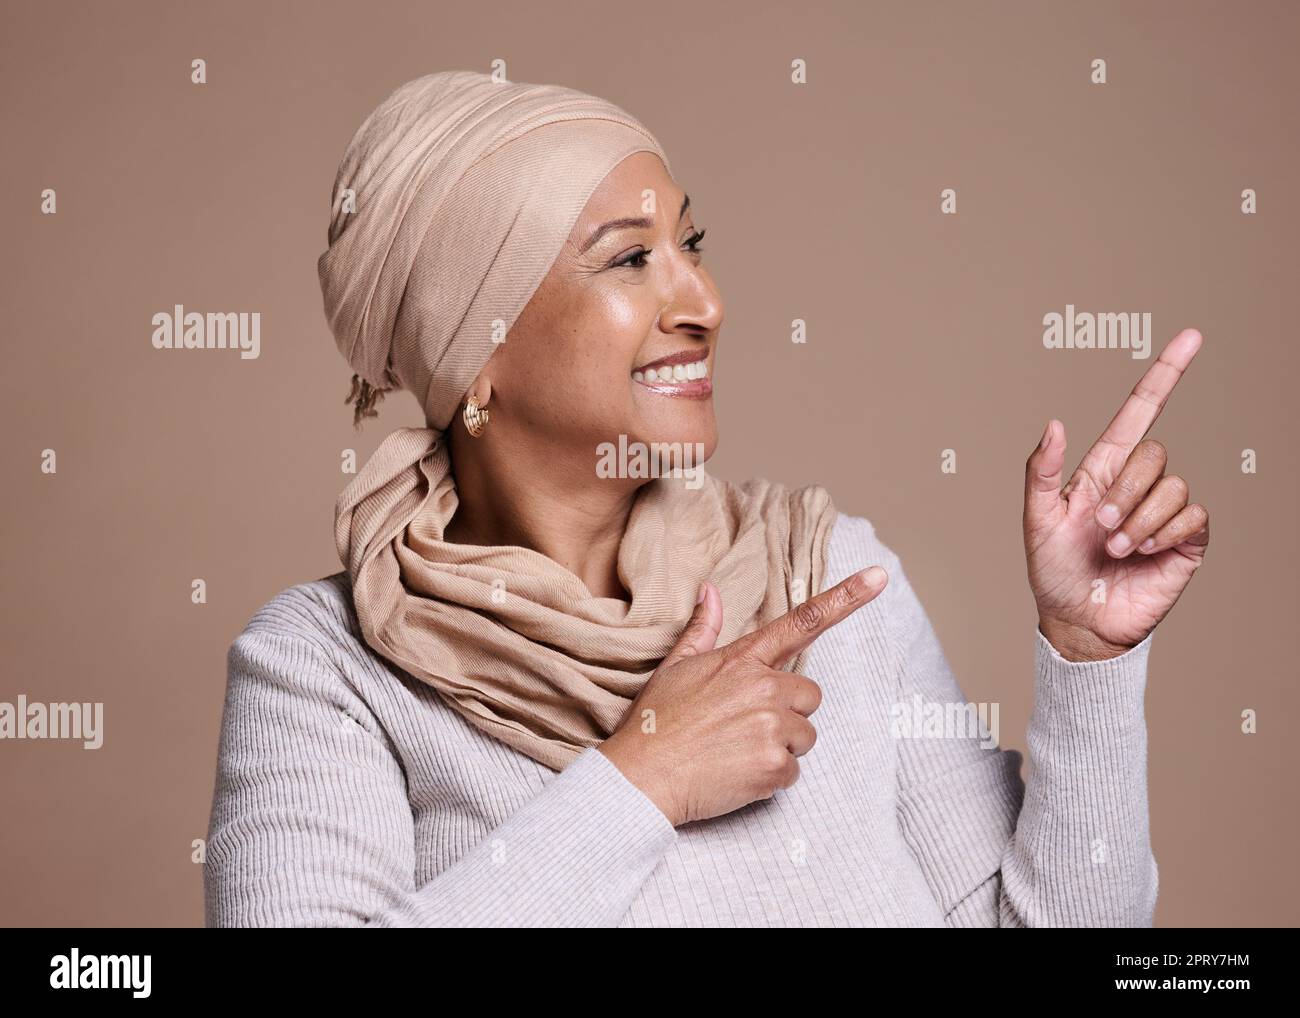 Reife islam Frau, zeigen oder Werbung Mock up, Marketing-Raum oder Studio Hintergrund Mockup. Glückliches Lächeln, muslimisches Model oder Mode-Hijab-Schal in Stockfoto